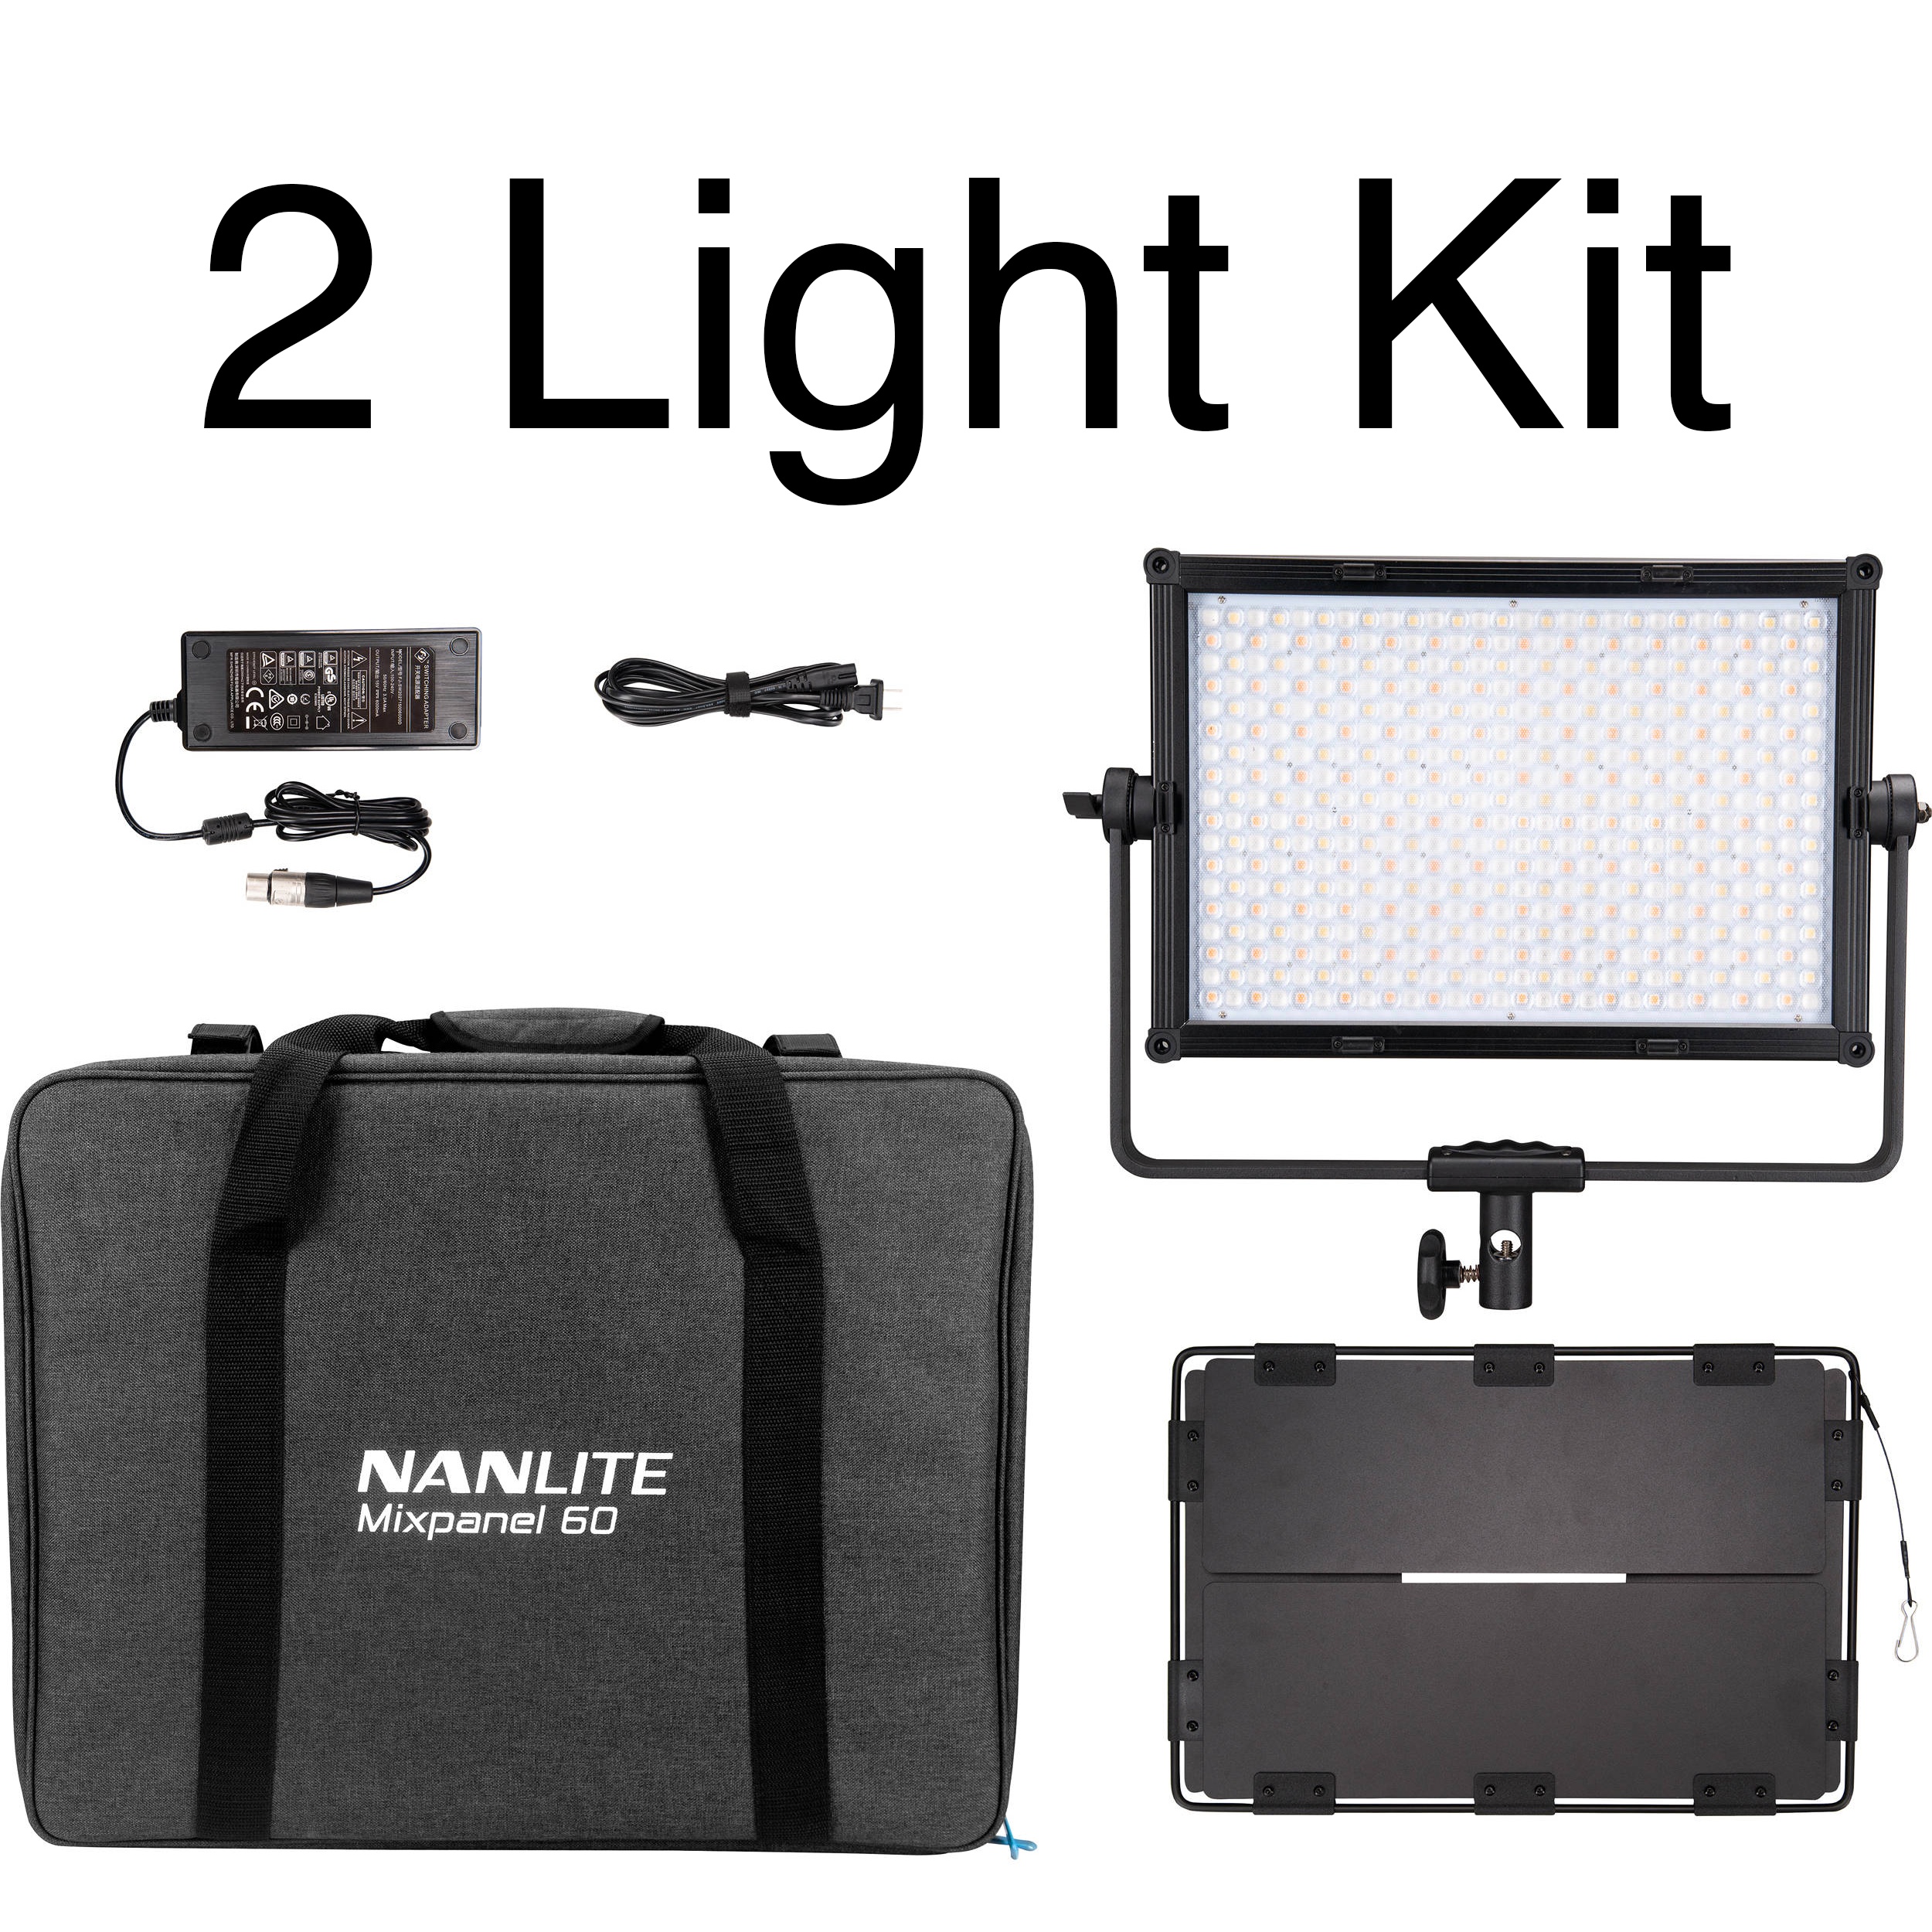 NanLite MixPanel 60 Bicolor Hard and Soft CCT and RGBWW 2 Light Kit